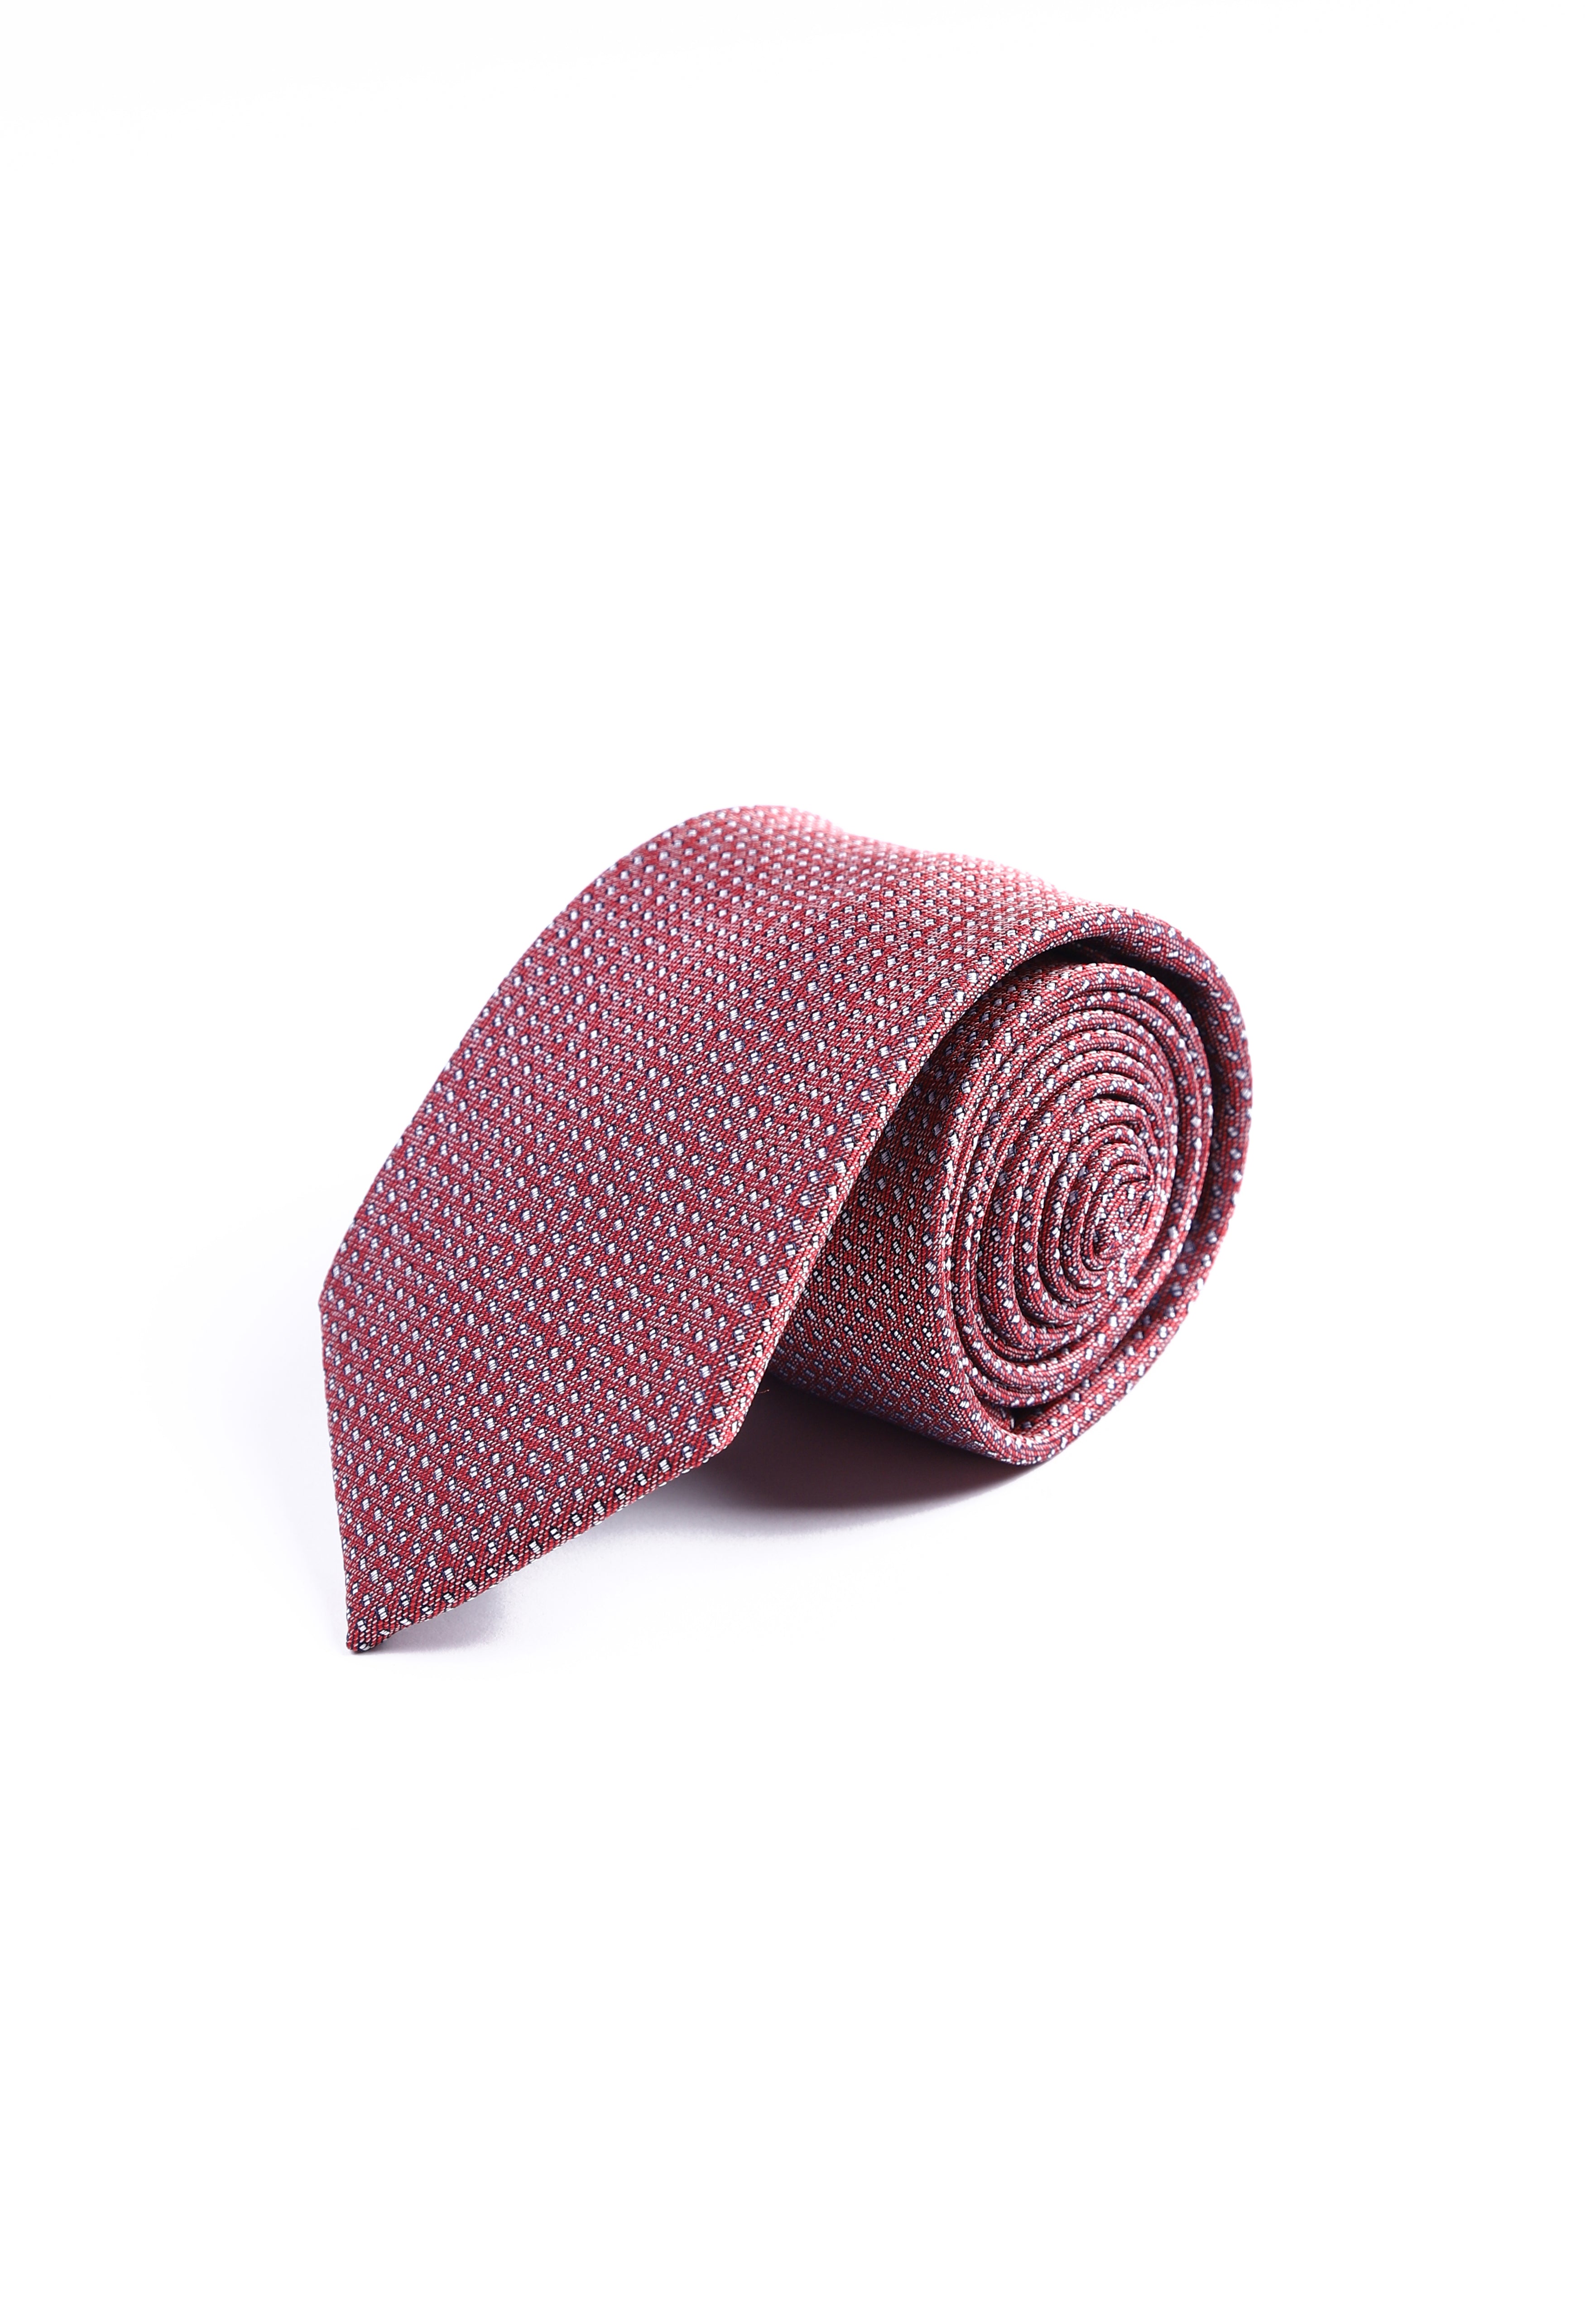 Vermillion Red Tie